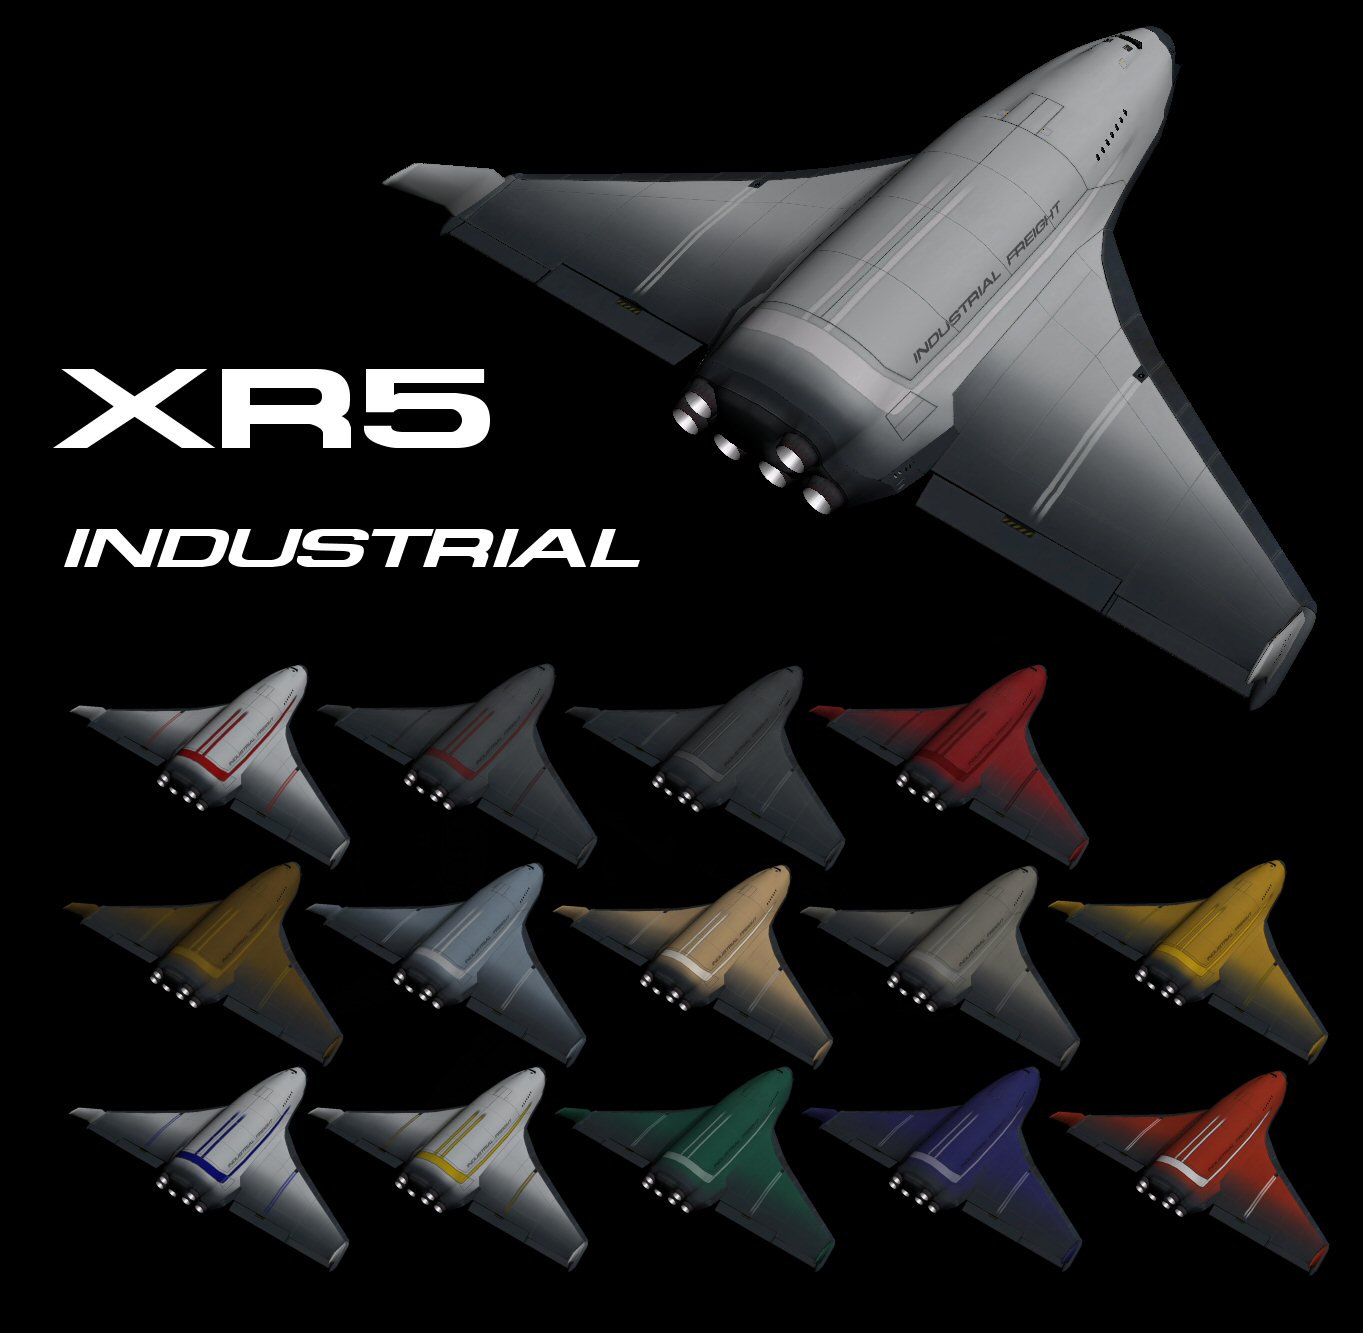 XR5 Industrial pic.jpg